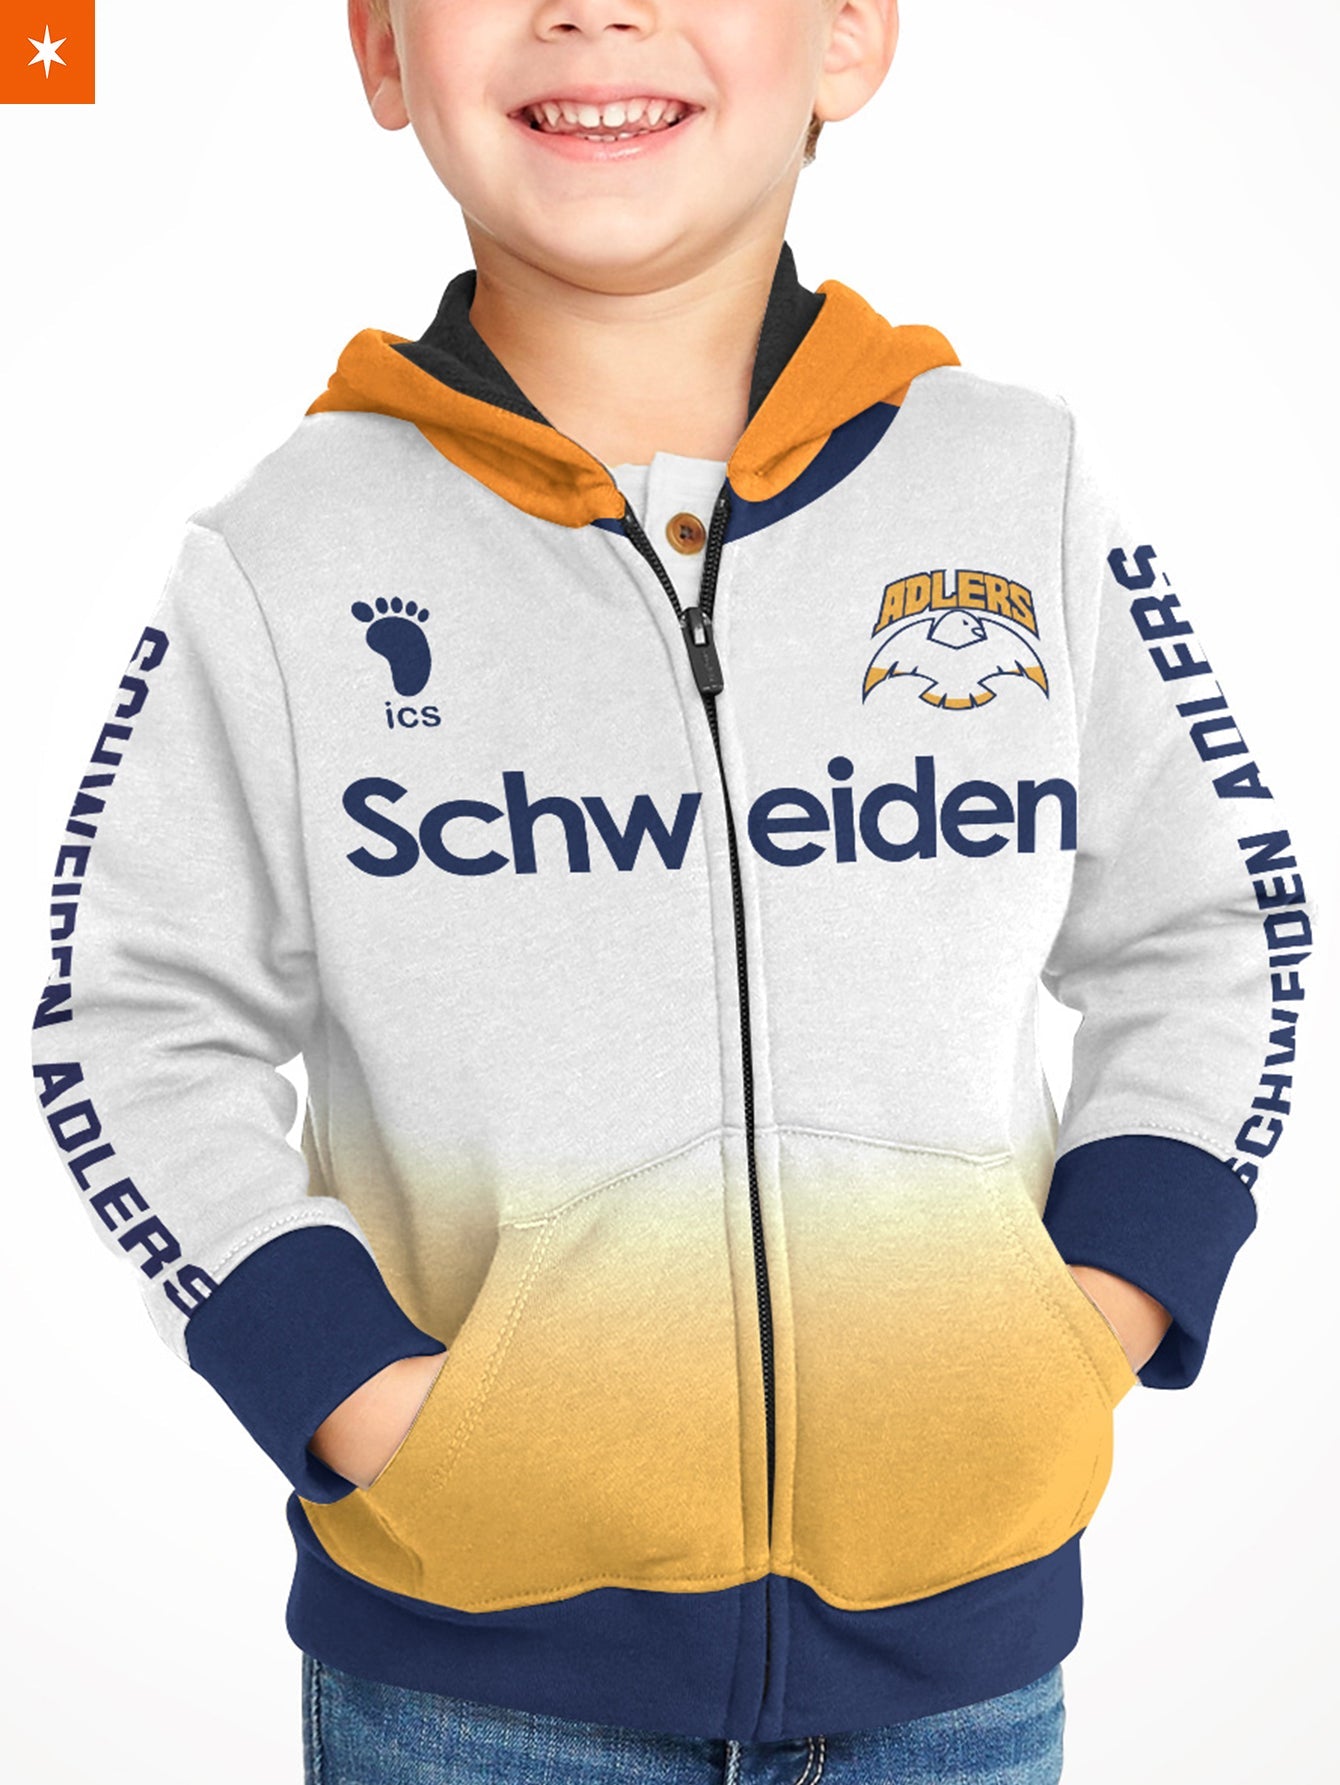 Fandomaniax - Personalized Schweiden Adlers Kids Unisex Zipped Hoodie